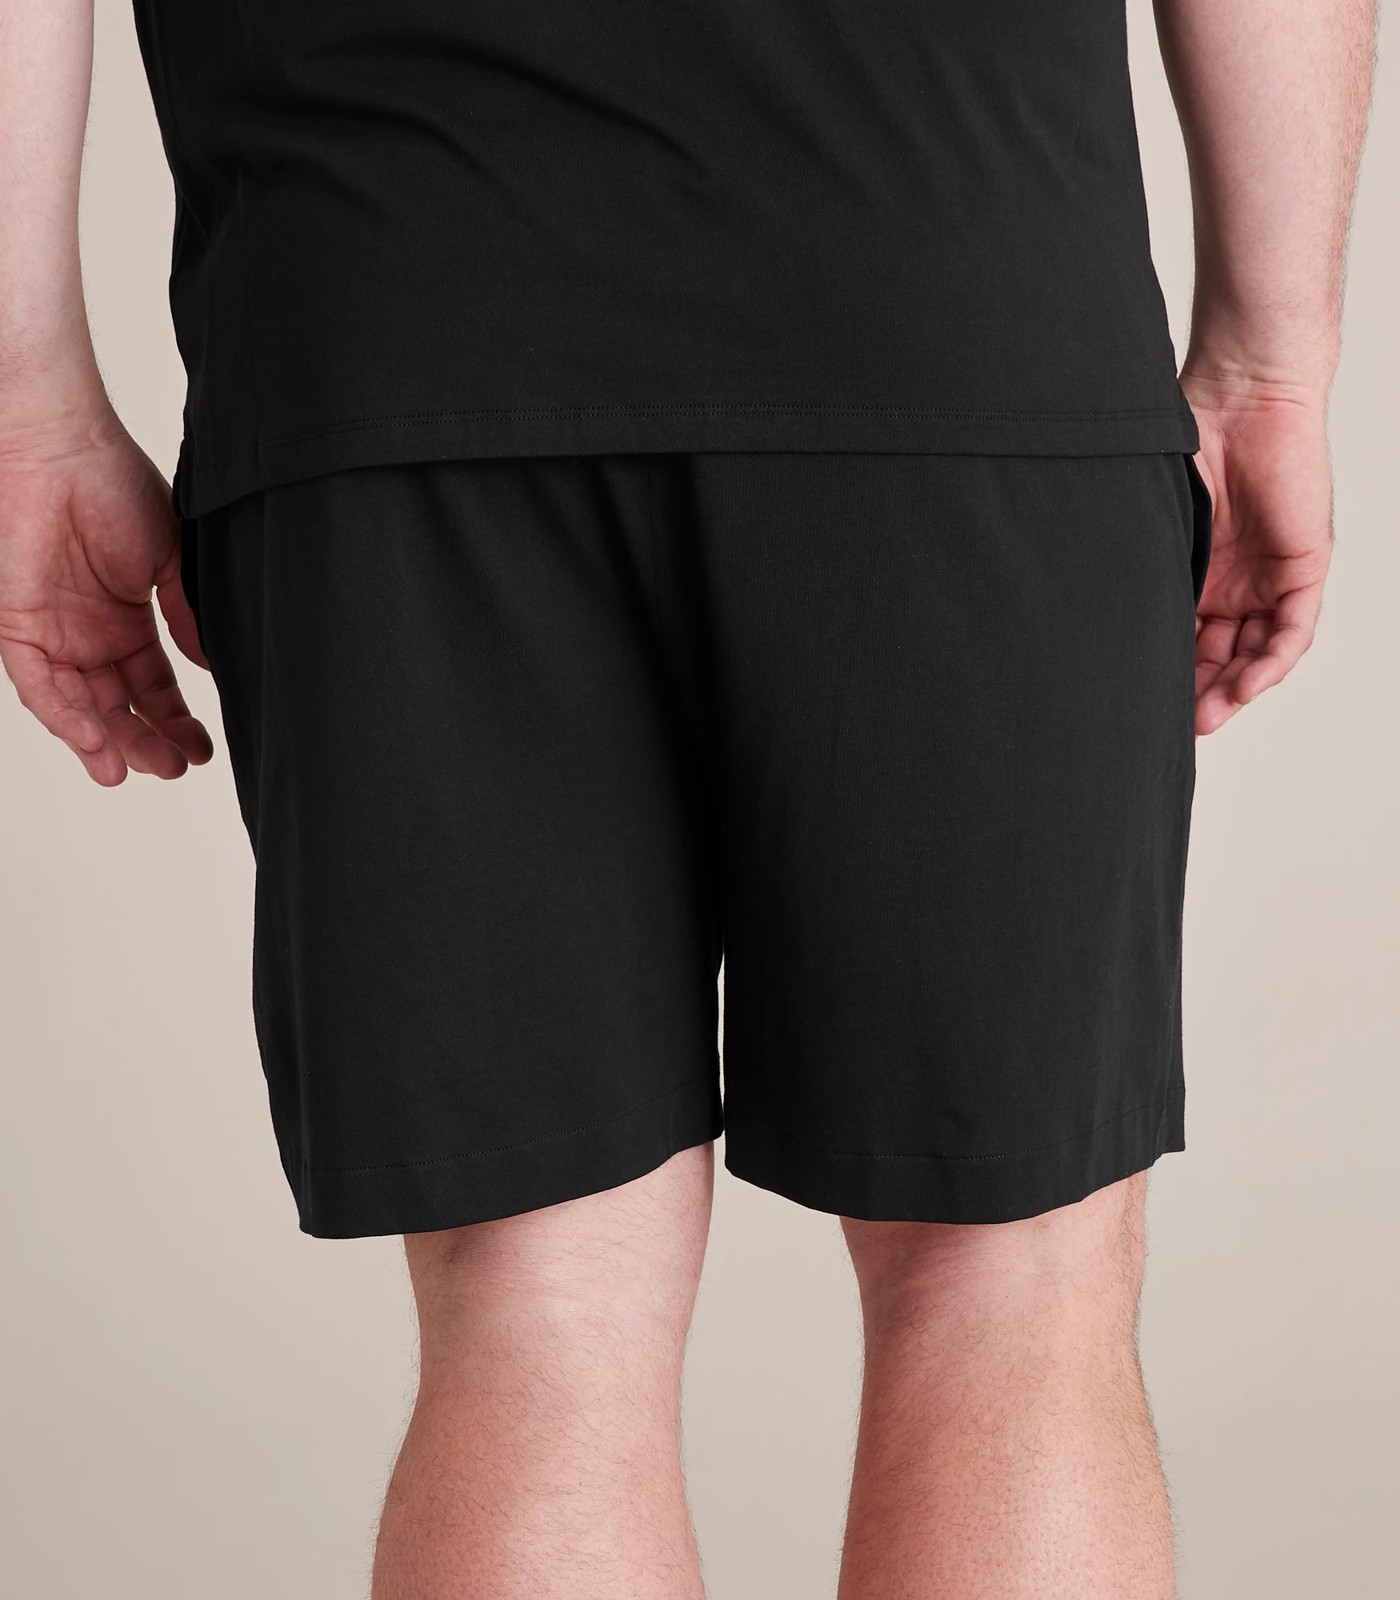 Maxx Plus Jersey Sleep Shorts | Target Australia